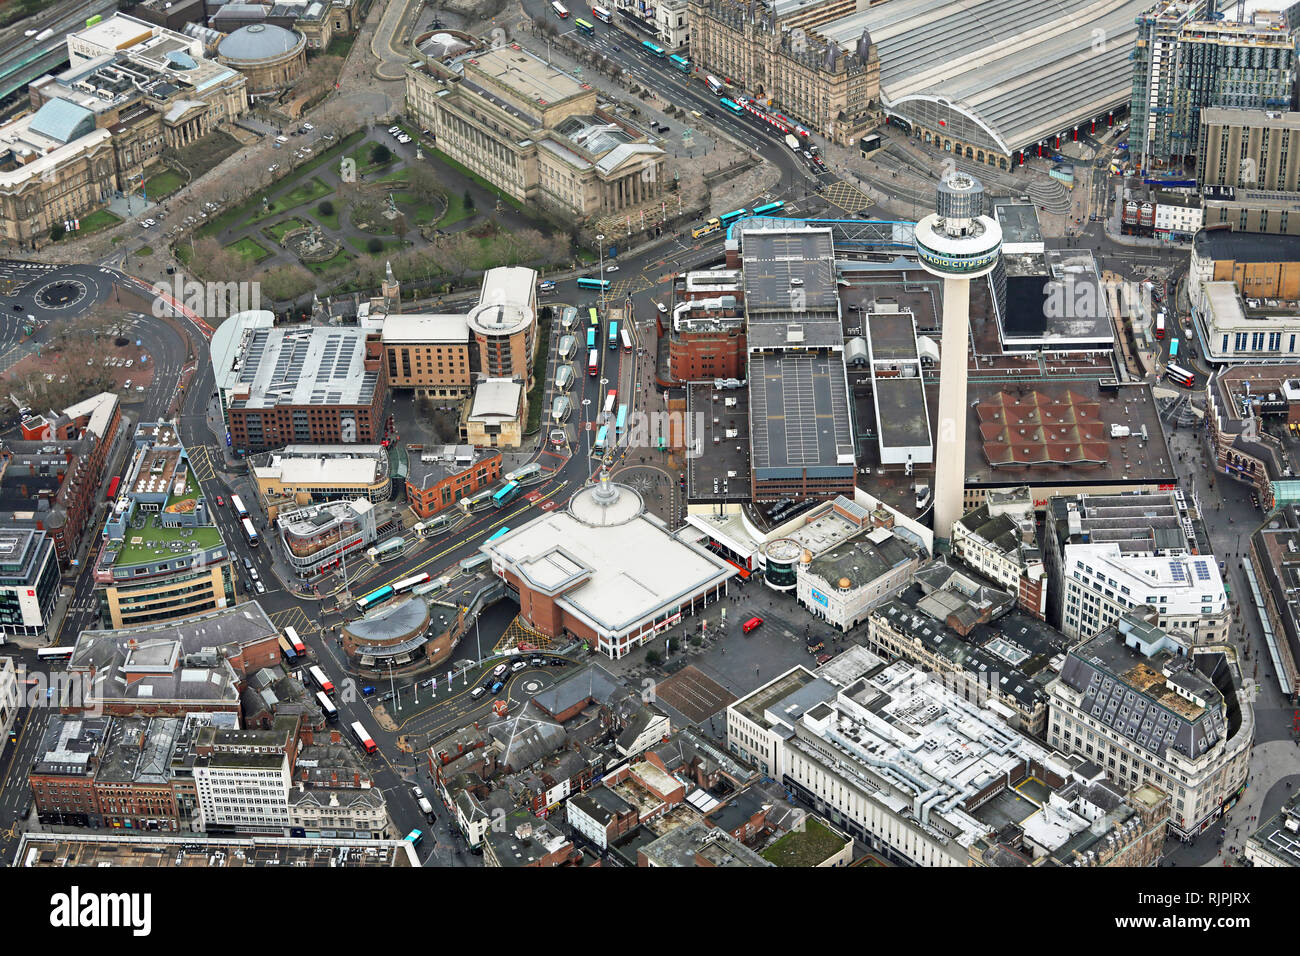 Vue aérienne de St Johns Centre commercial et alentours dans le centre-ville de Liverpool Banque D'Images